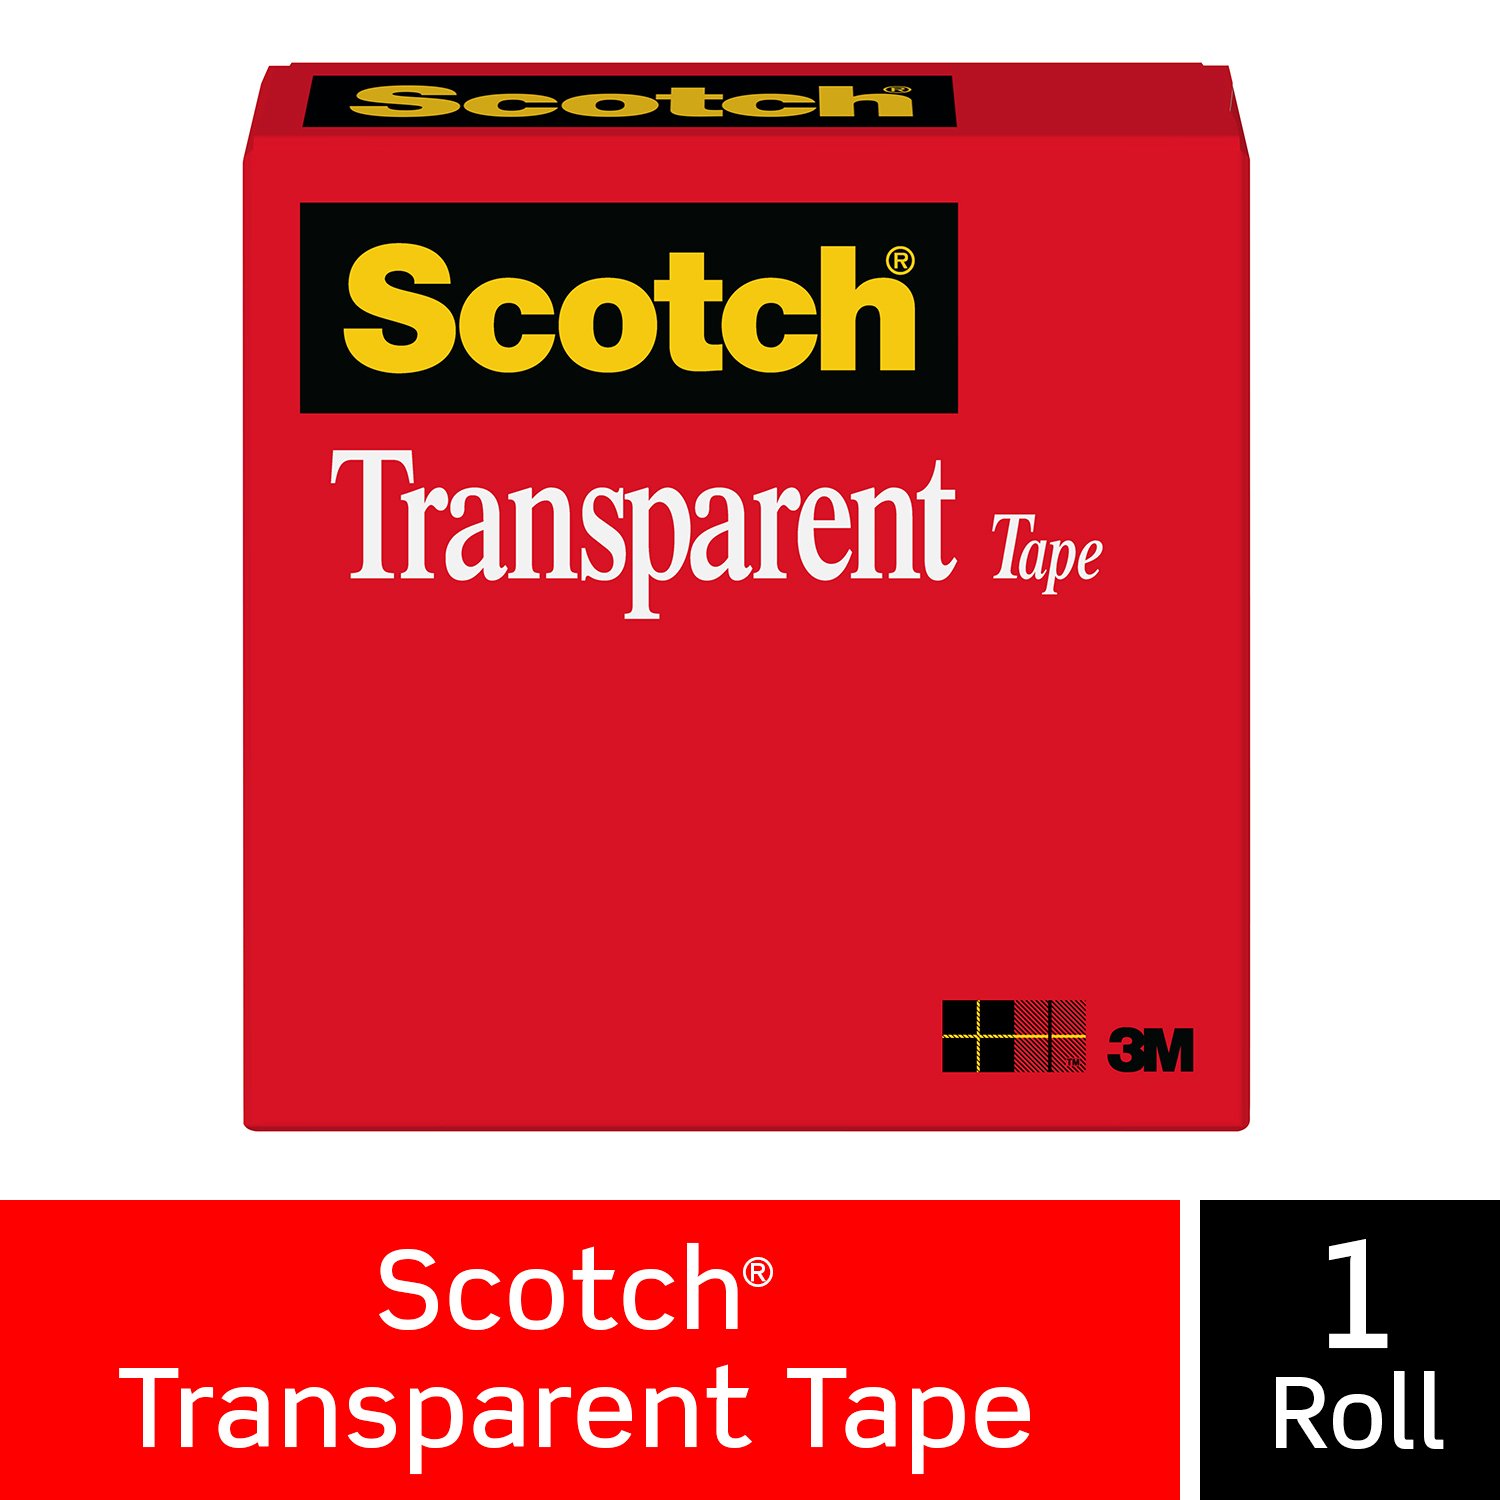 7000029140 - Scotch Transparent Tape 600 Clear, 1/2 in x 1296 in, 144 per case Boxed